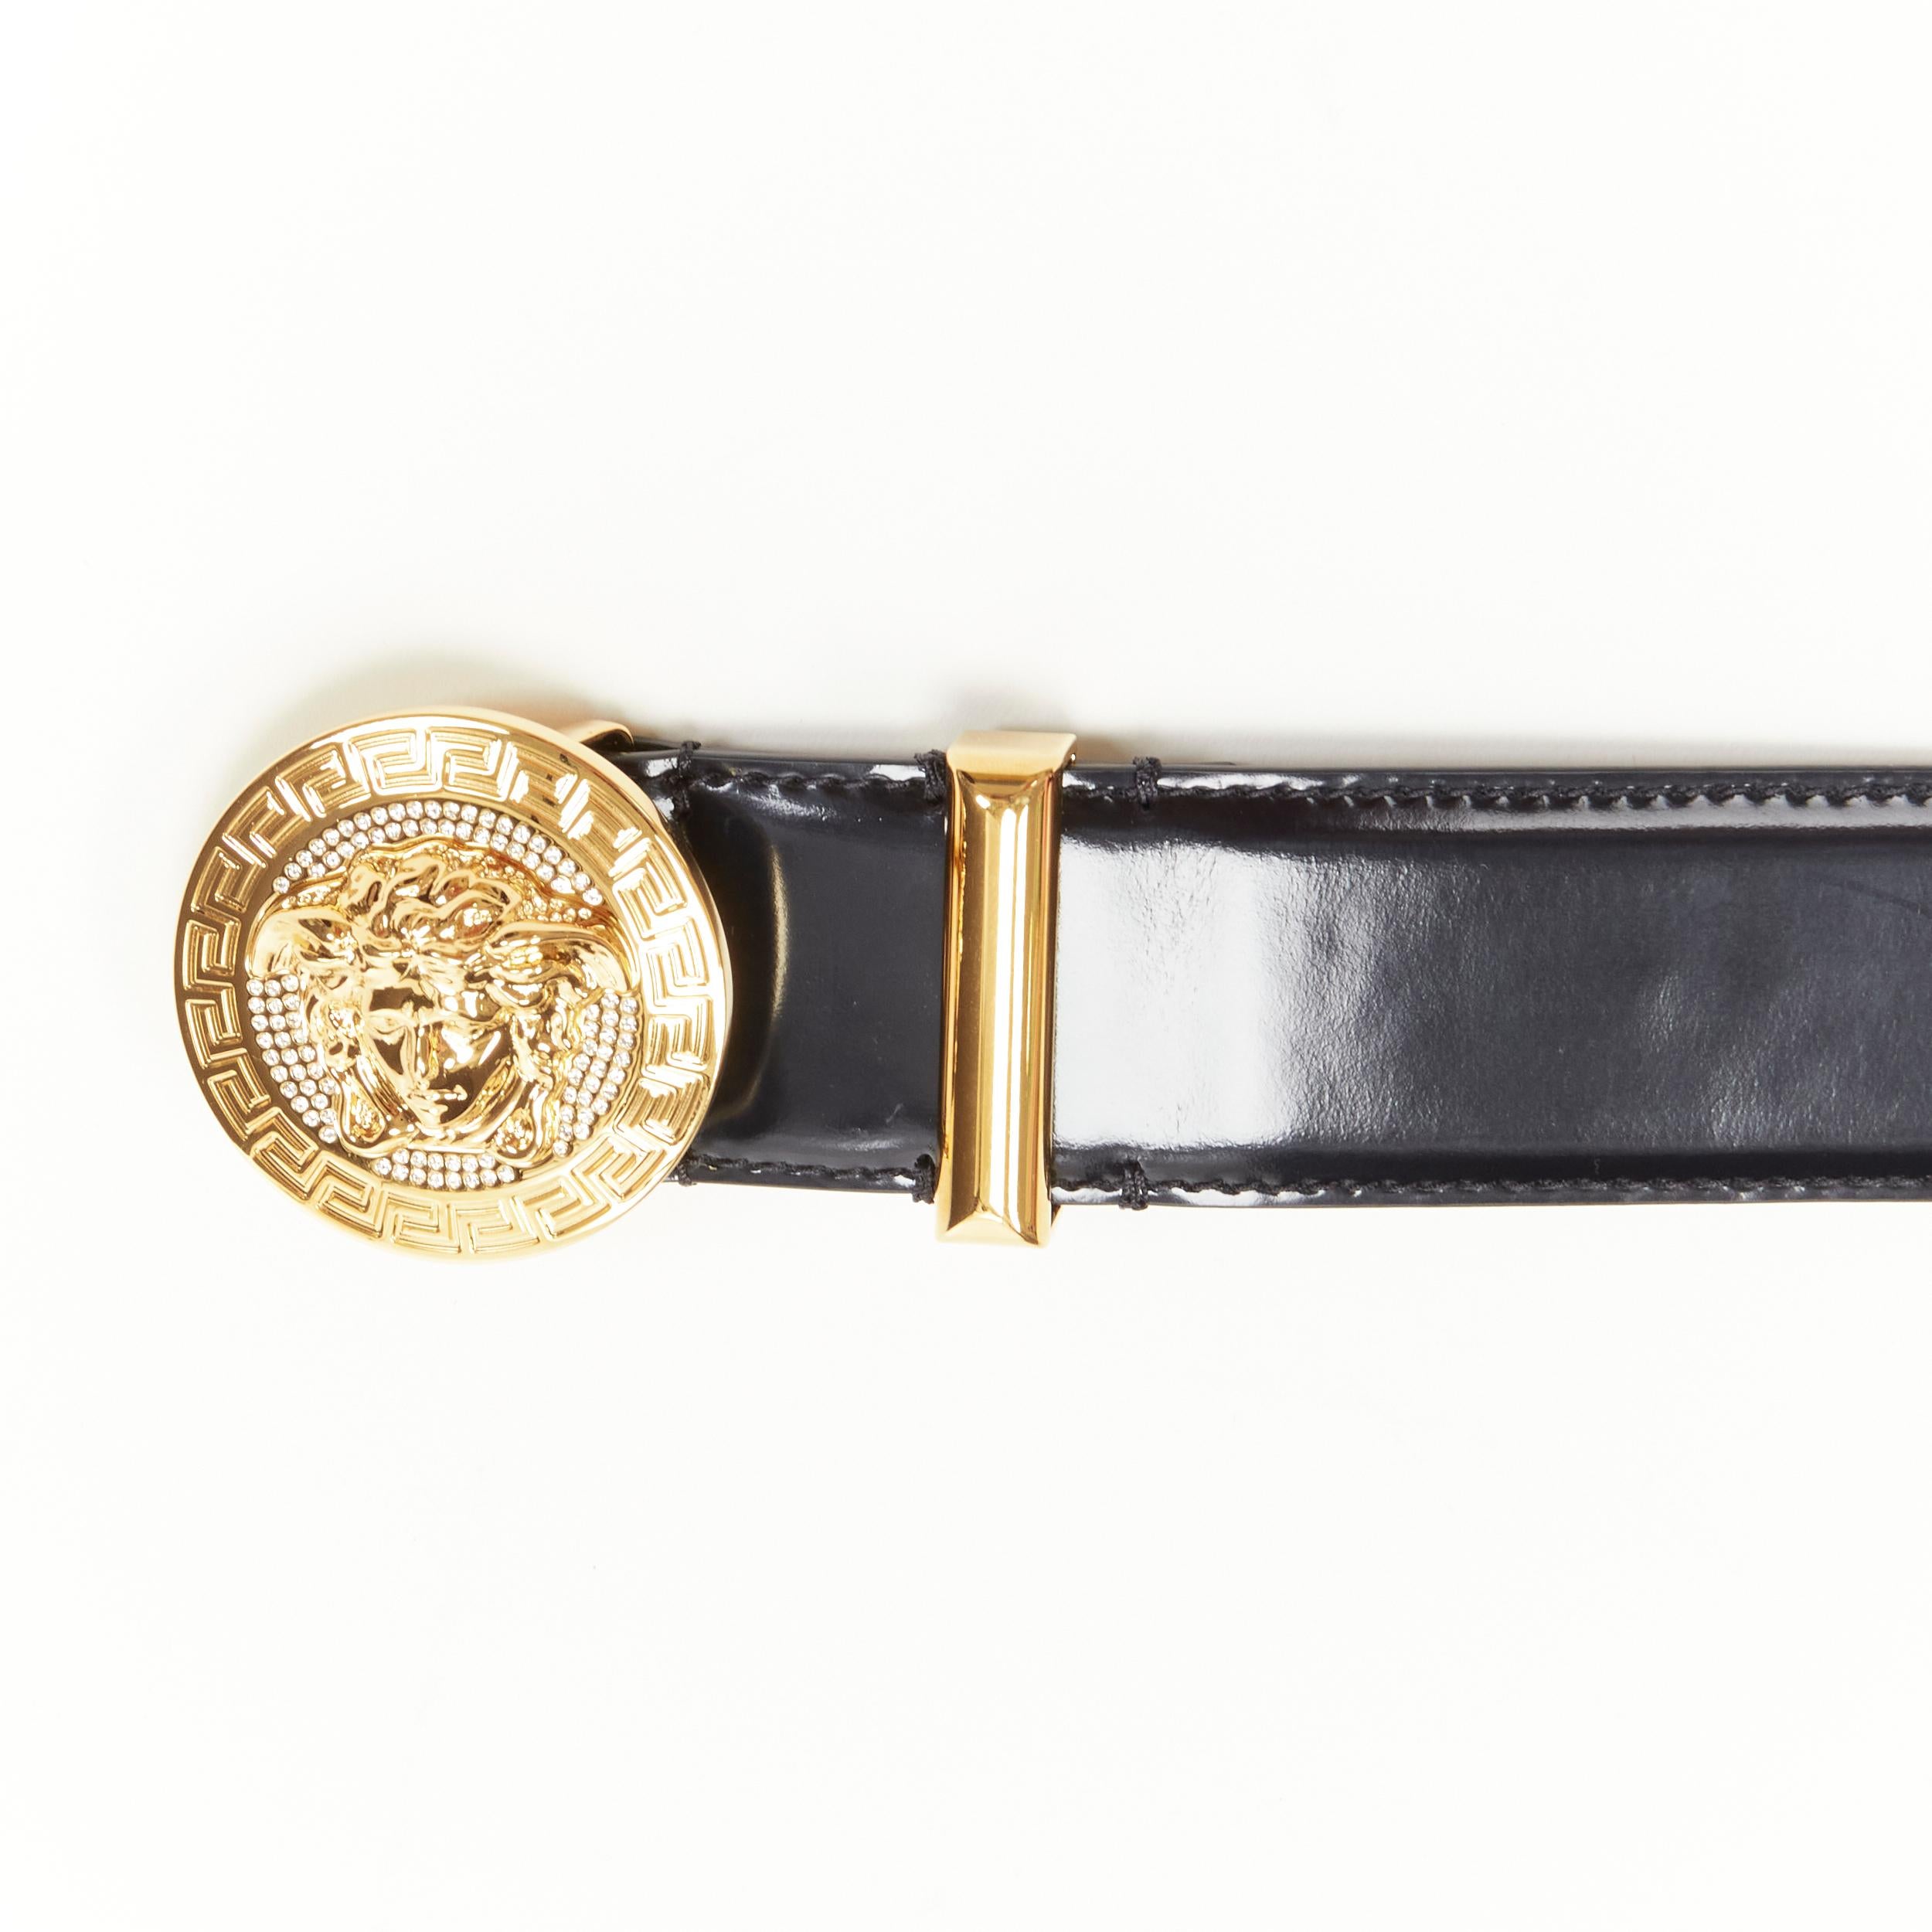 Black new VERSACE Medusa Biggie crystal gold Medallion coin leather belt 110cm 42-46